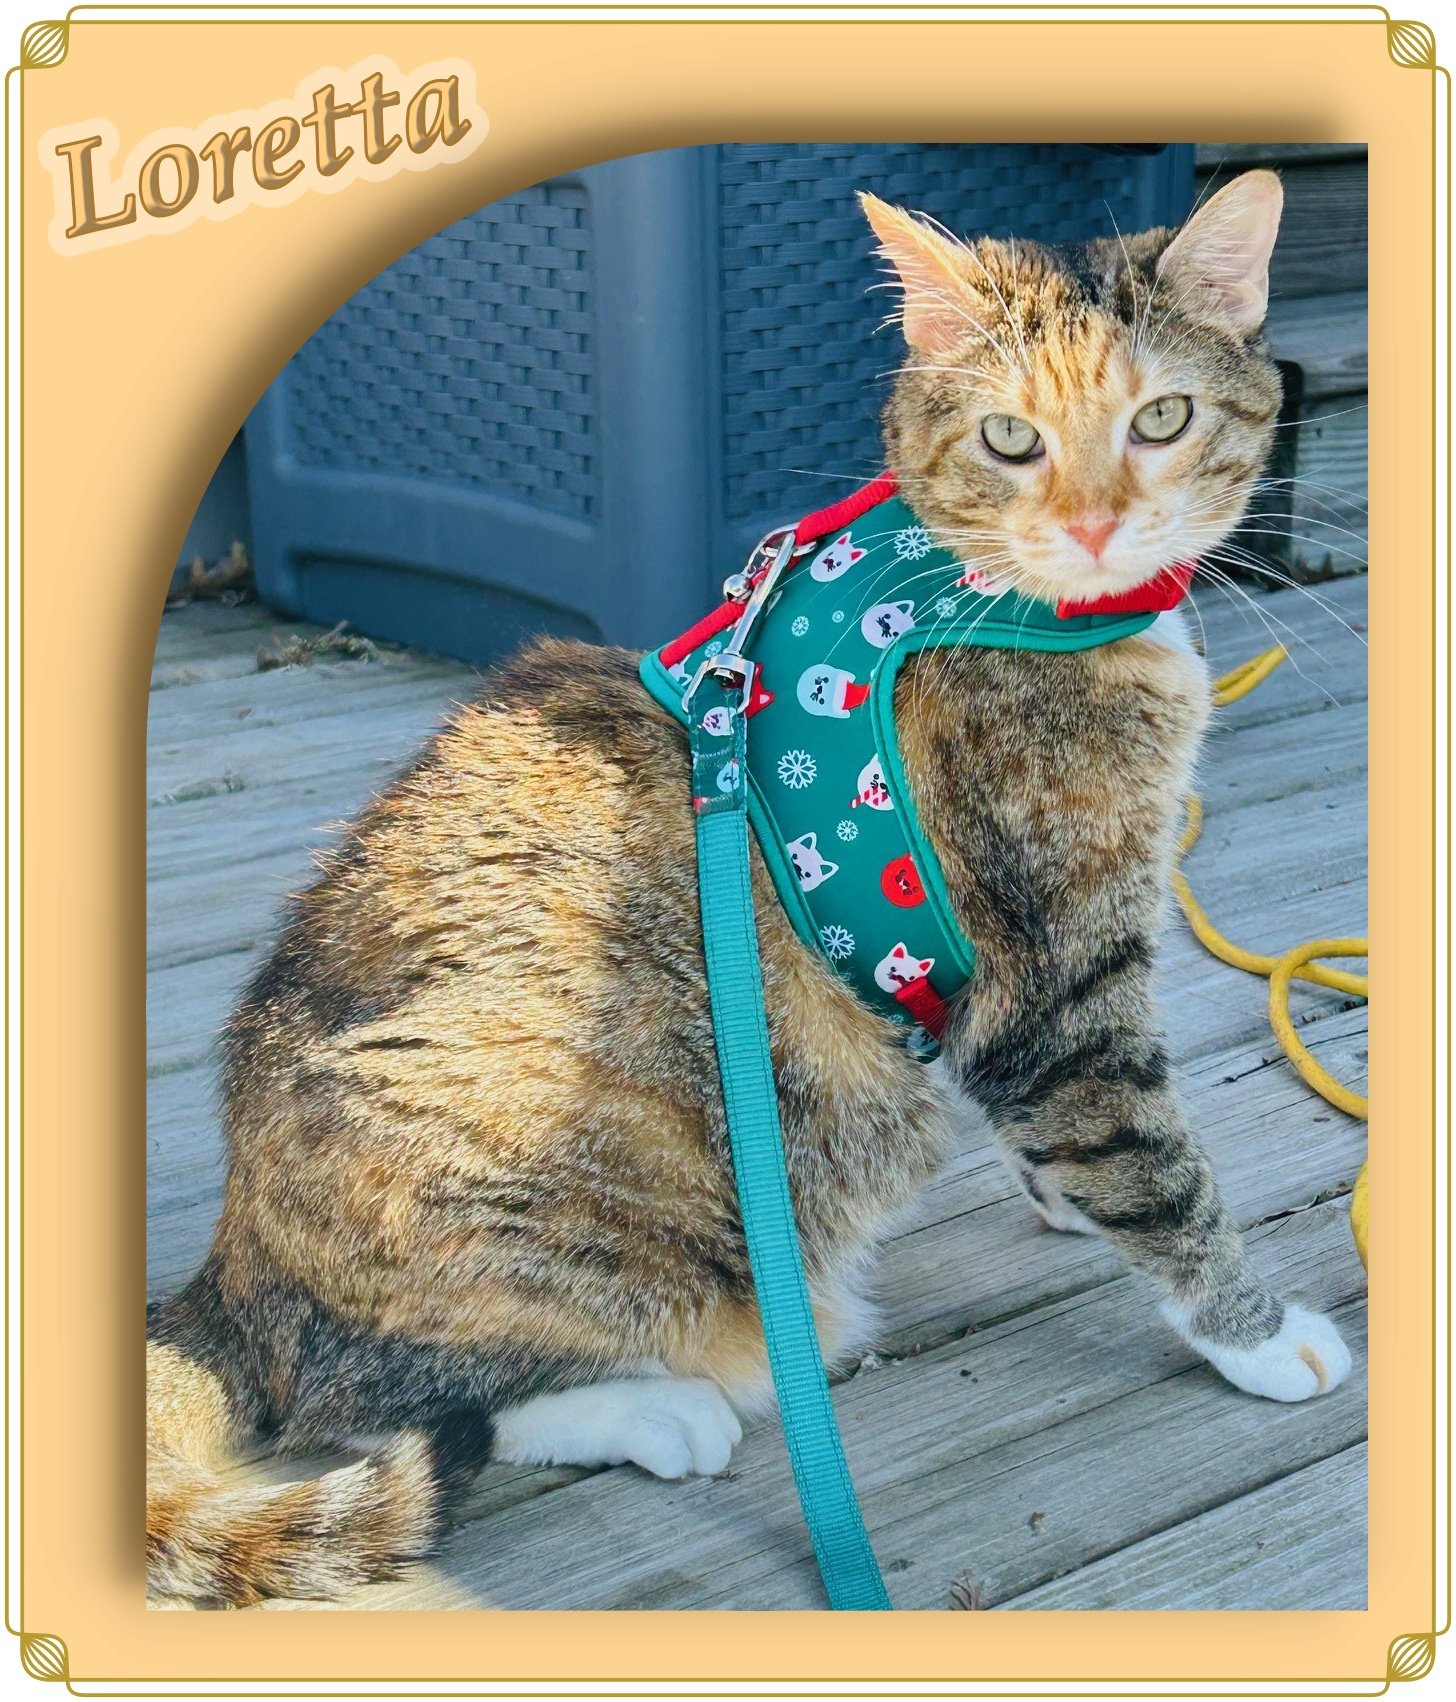 adoptable Cat in Cedar Rapids, IA named Loretta